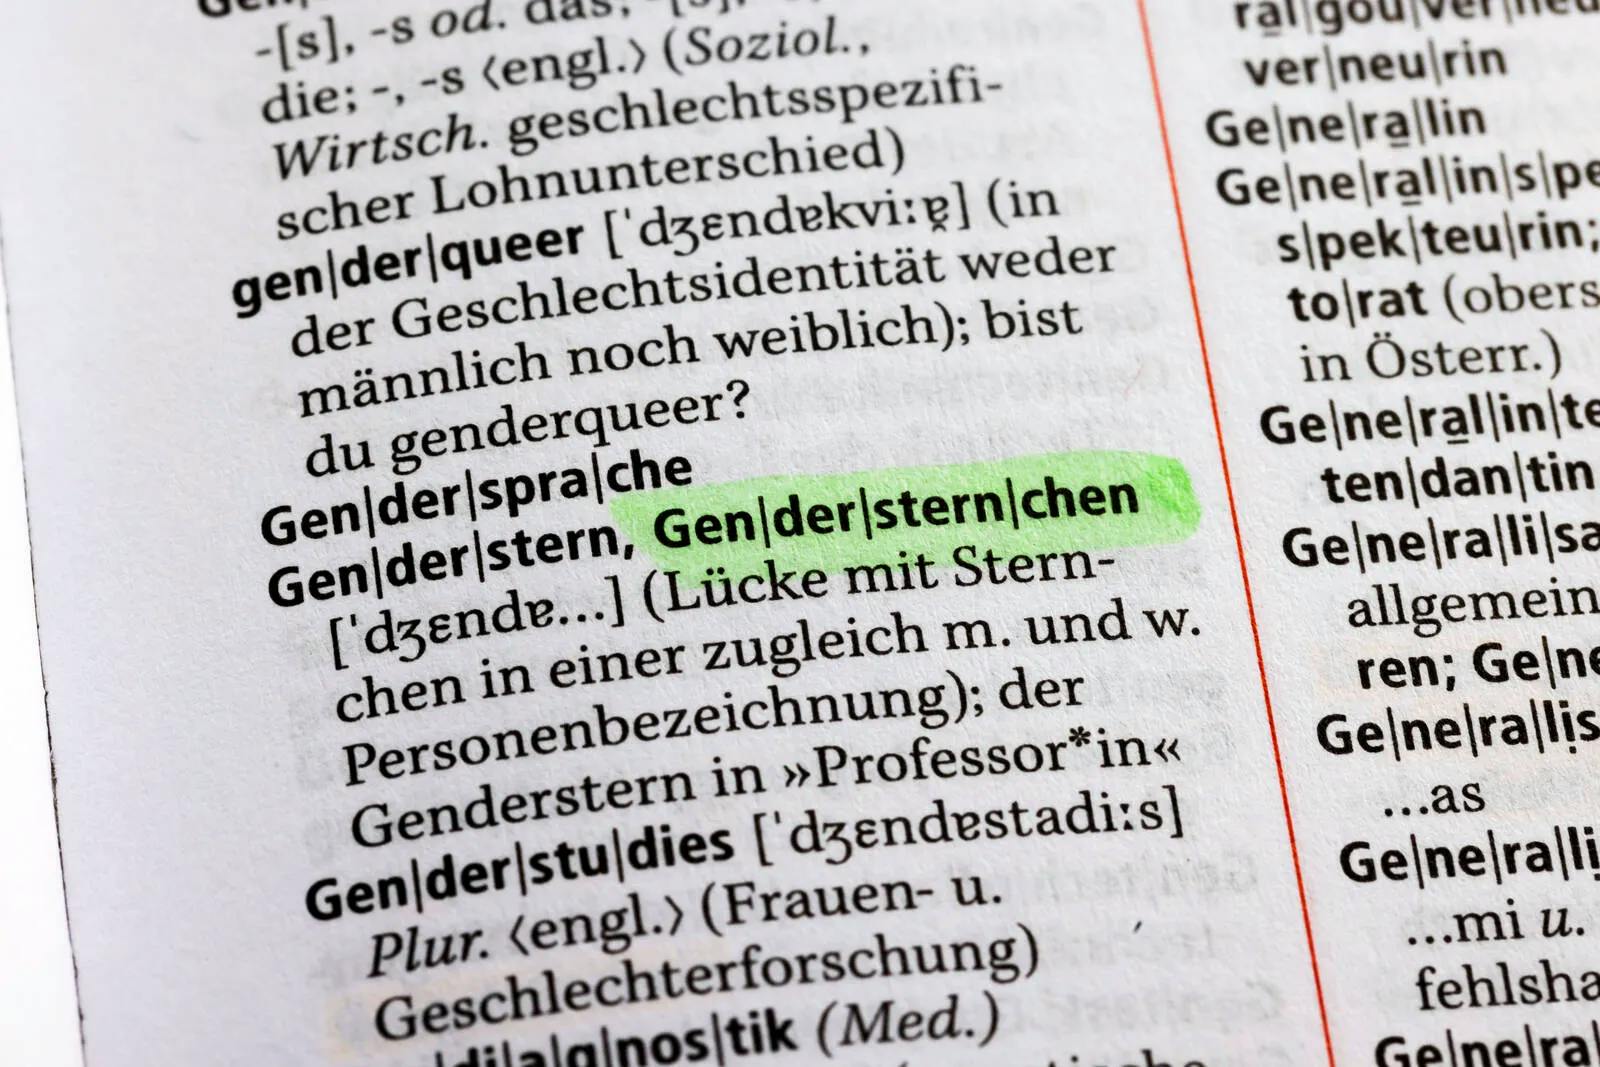 AfD Sachsen fordert Verbot von Gendersprache in Behörden